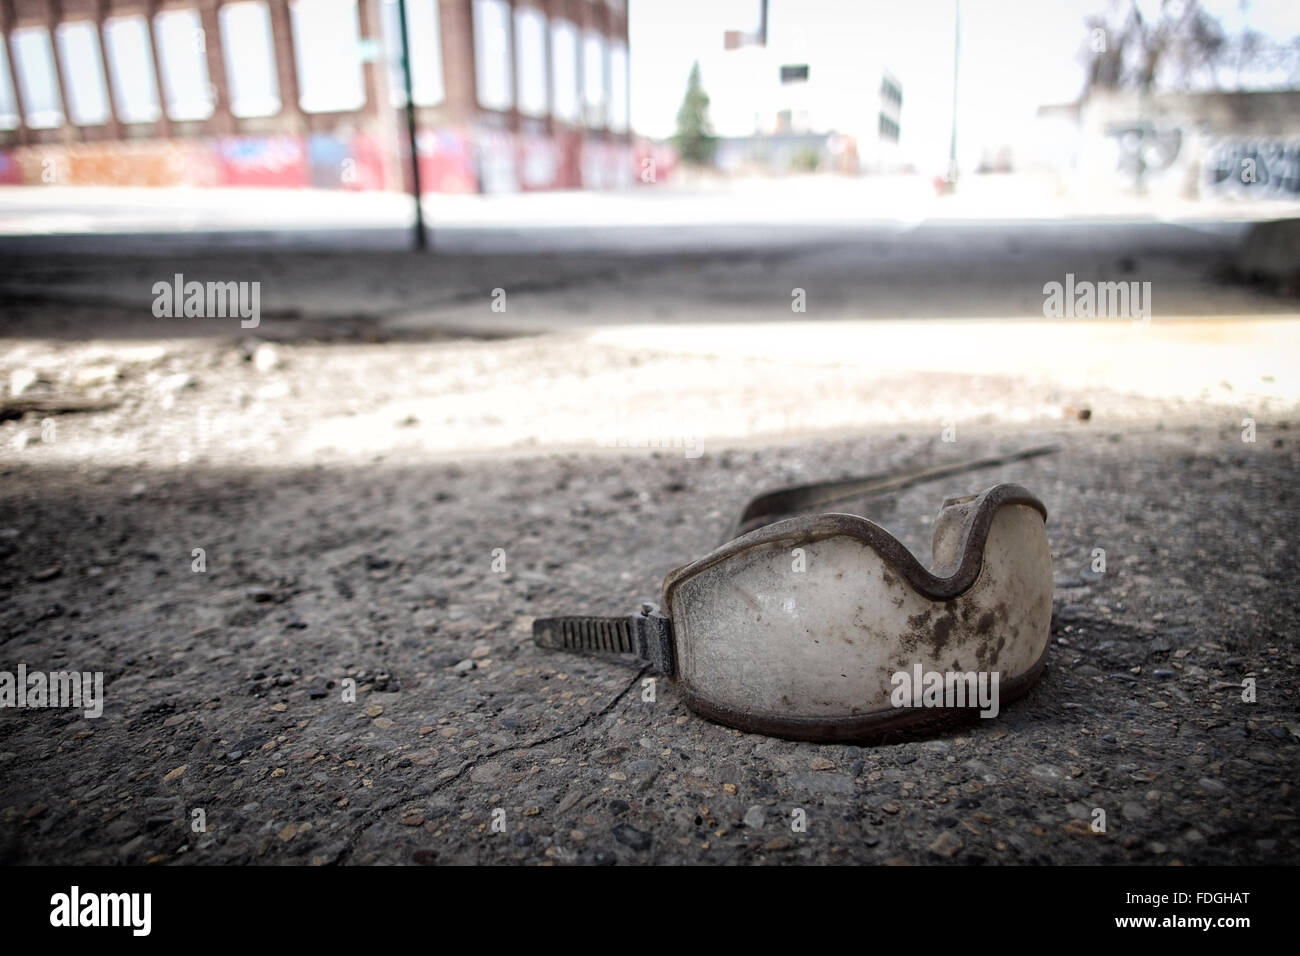 Schutzbrille auf einer städtischen Straße in einem Industriegebiet verworfen Stockfoto